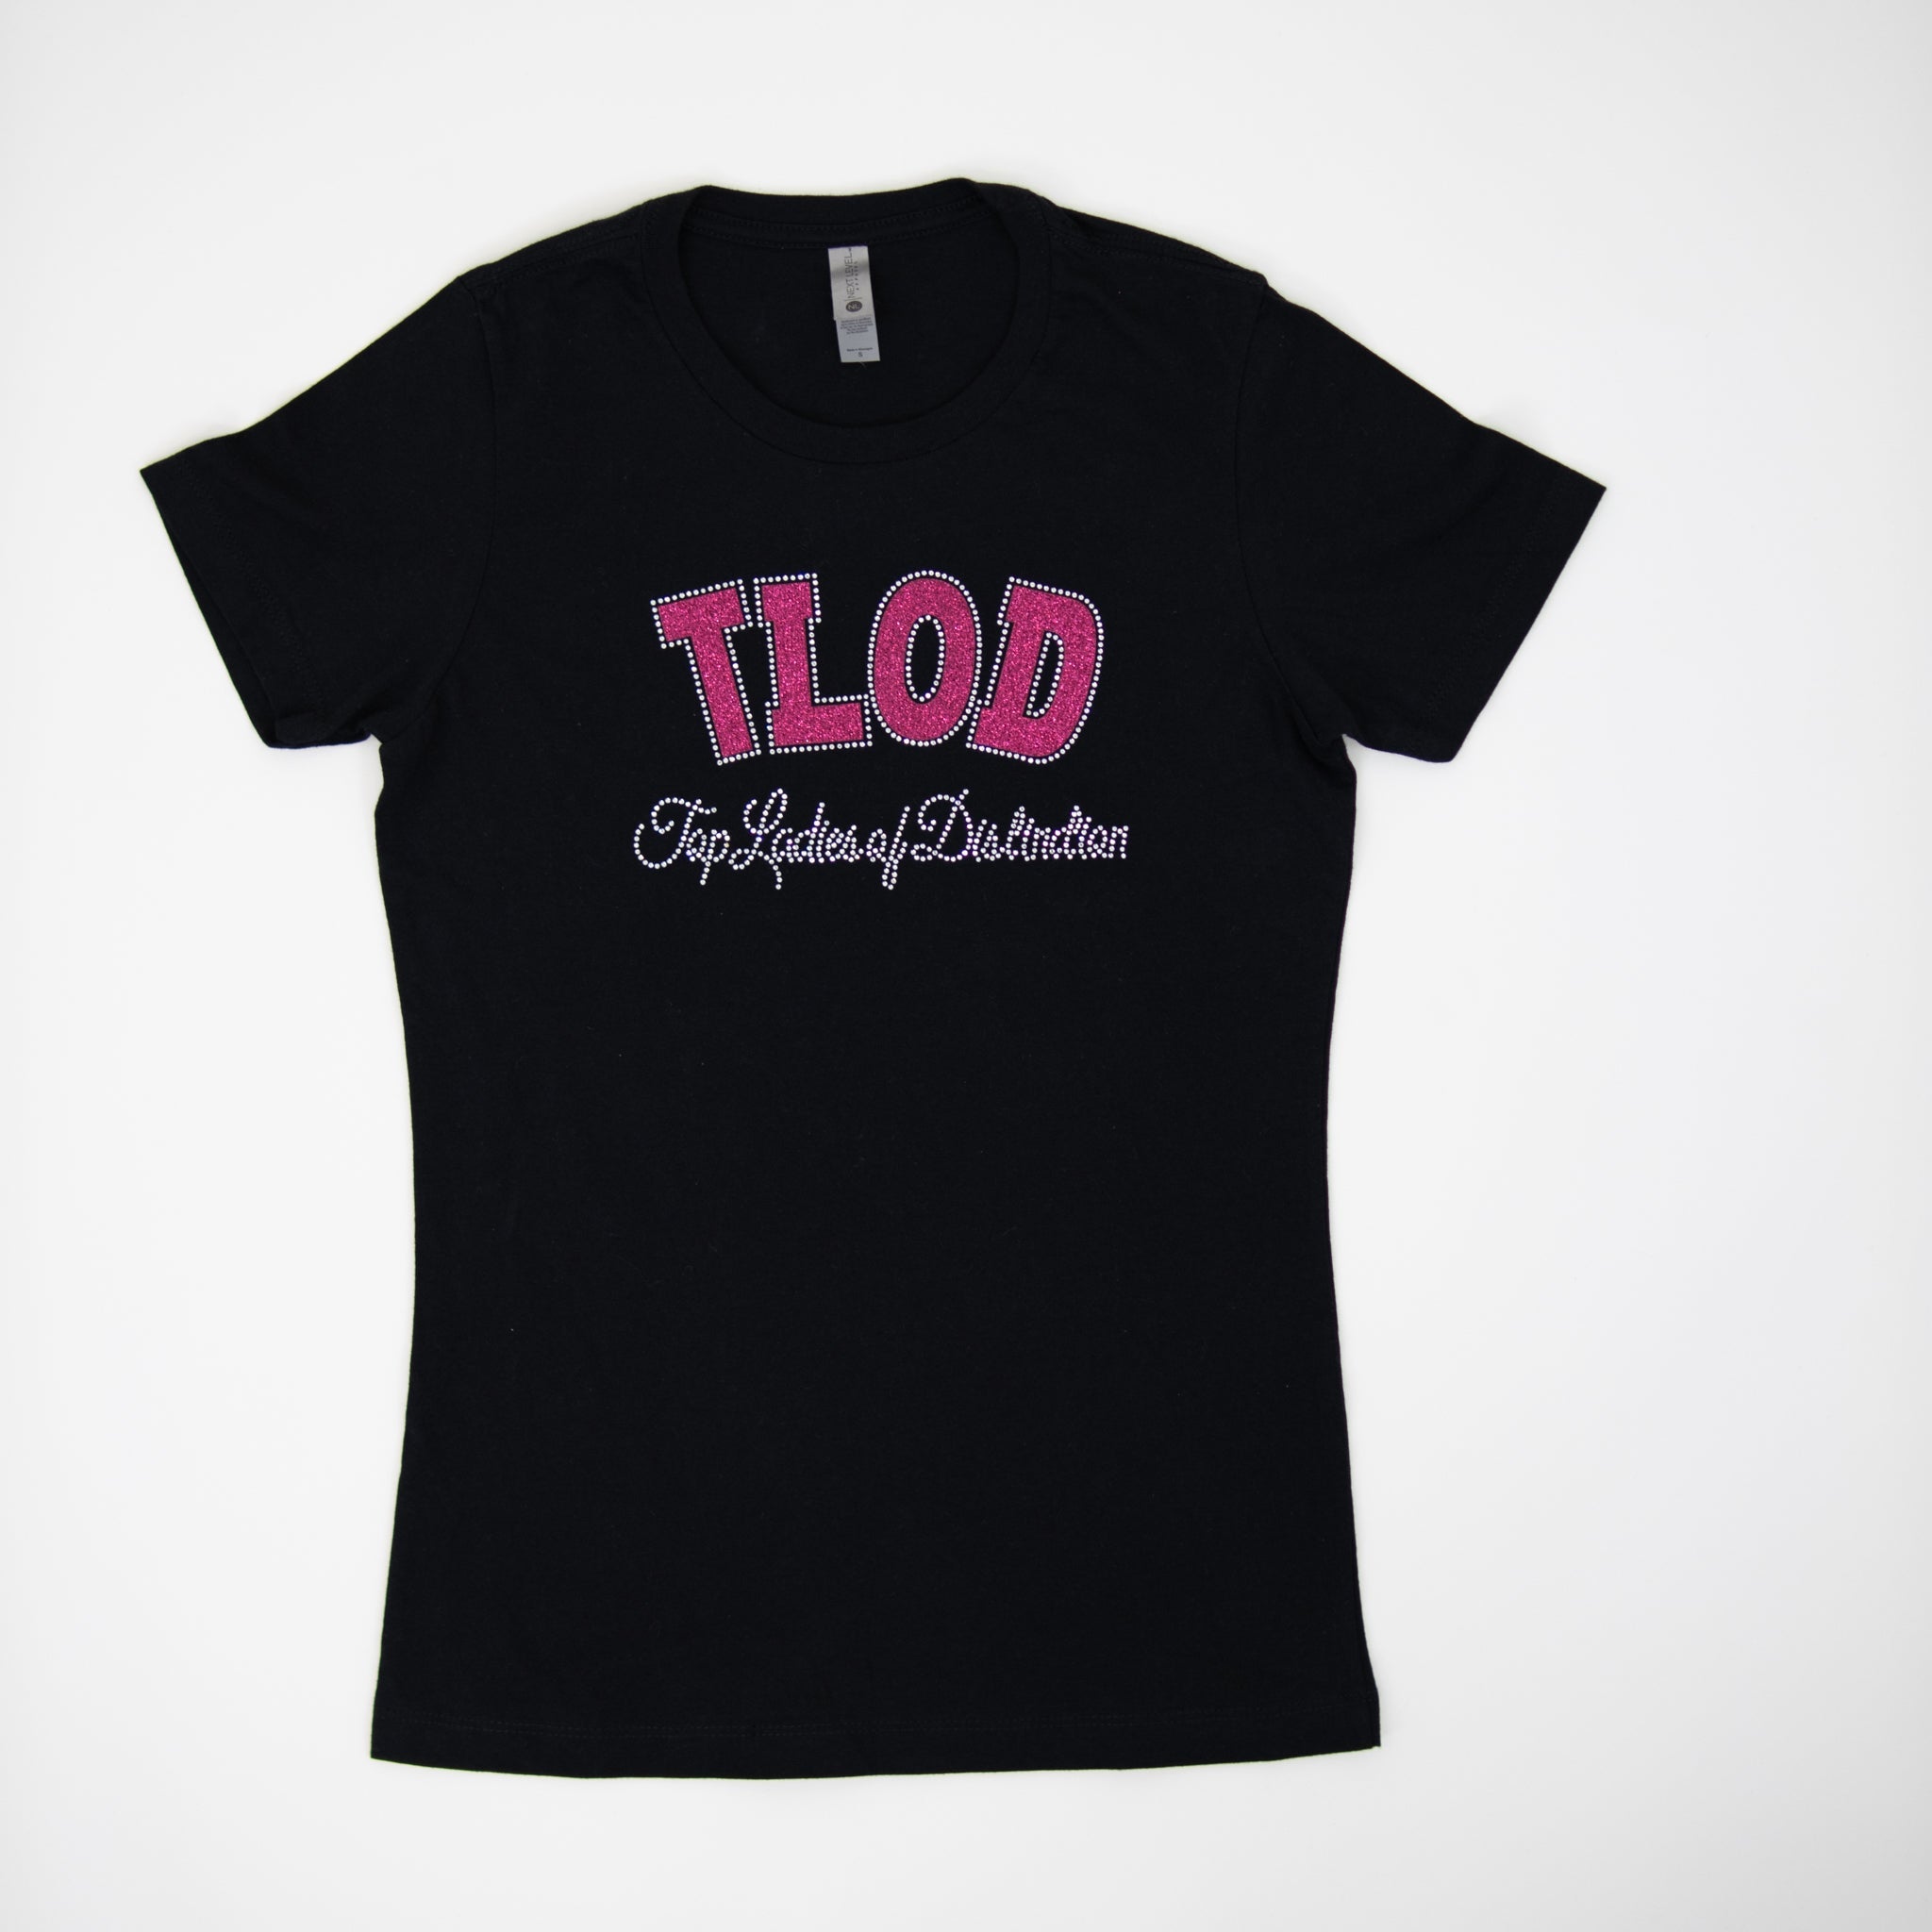 Black Top Ladies Of Distinction T - Shirt - Diva Starr Boutique